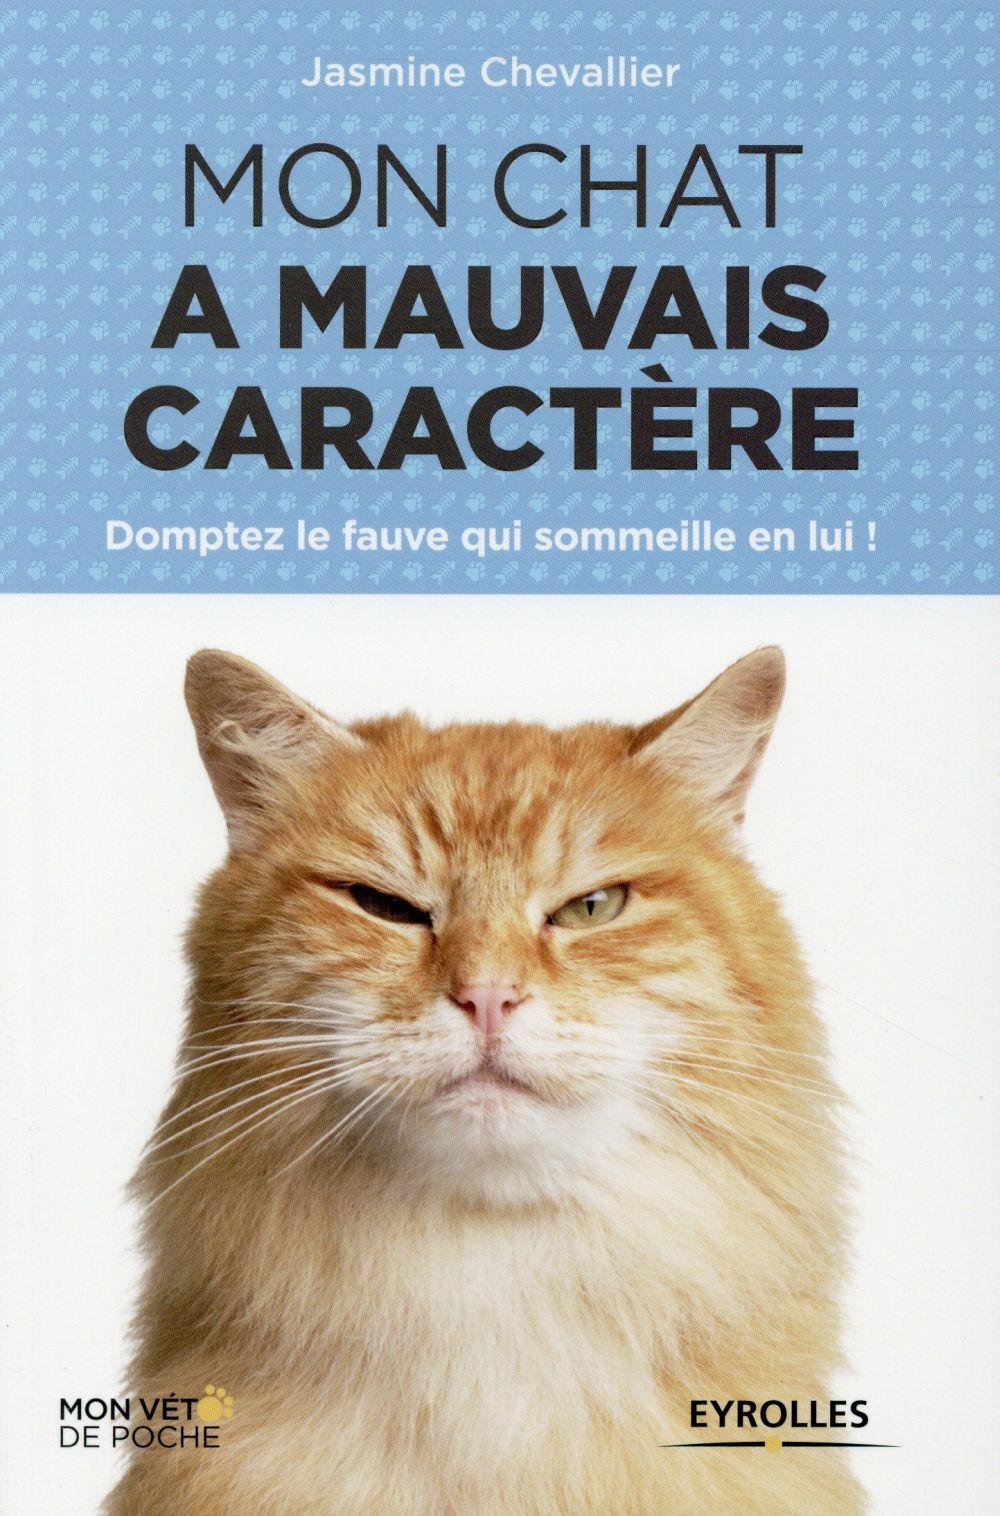 Vente Livre :                                    Mon chat a mauvais caractère ; domptez le fauve qui sommeille en lui
- Jasmine Chevallier                                     